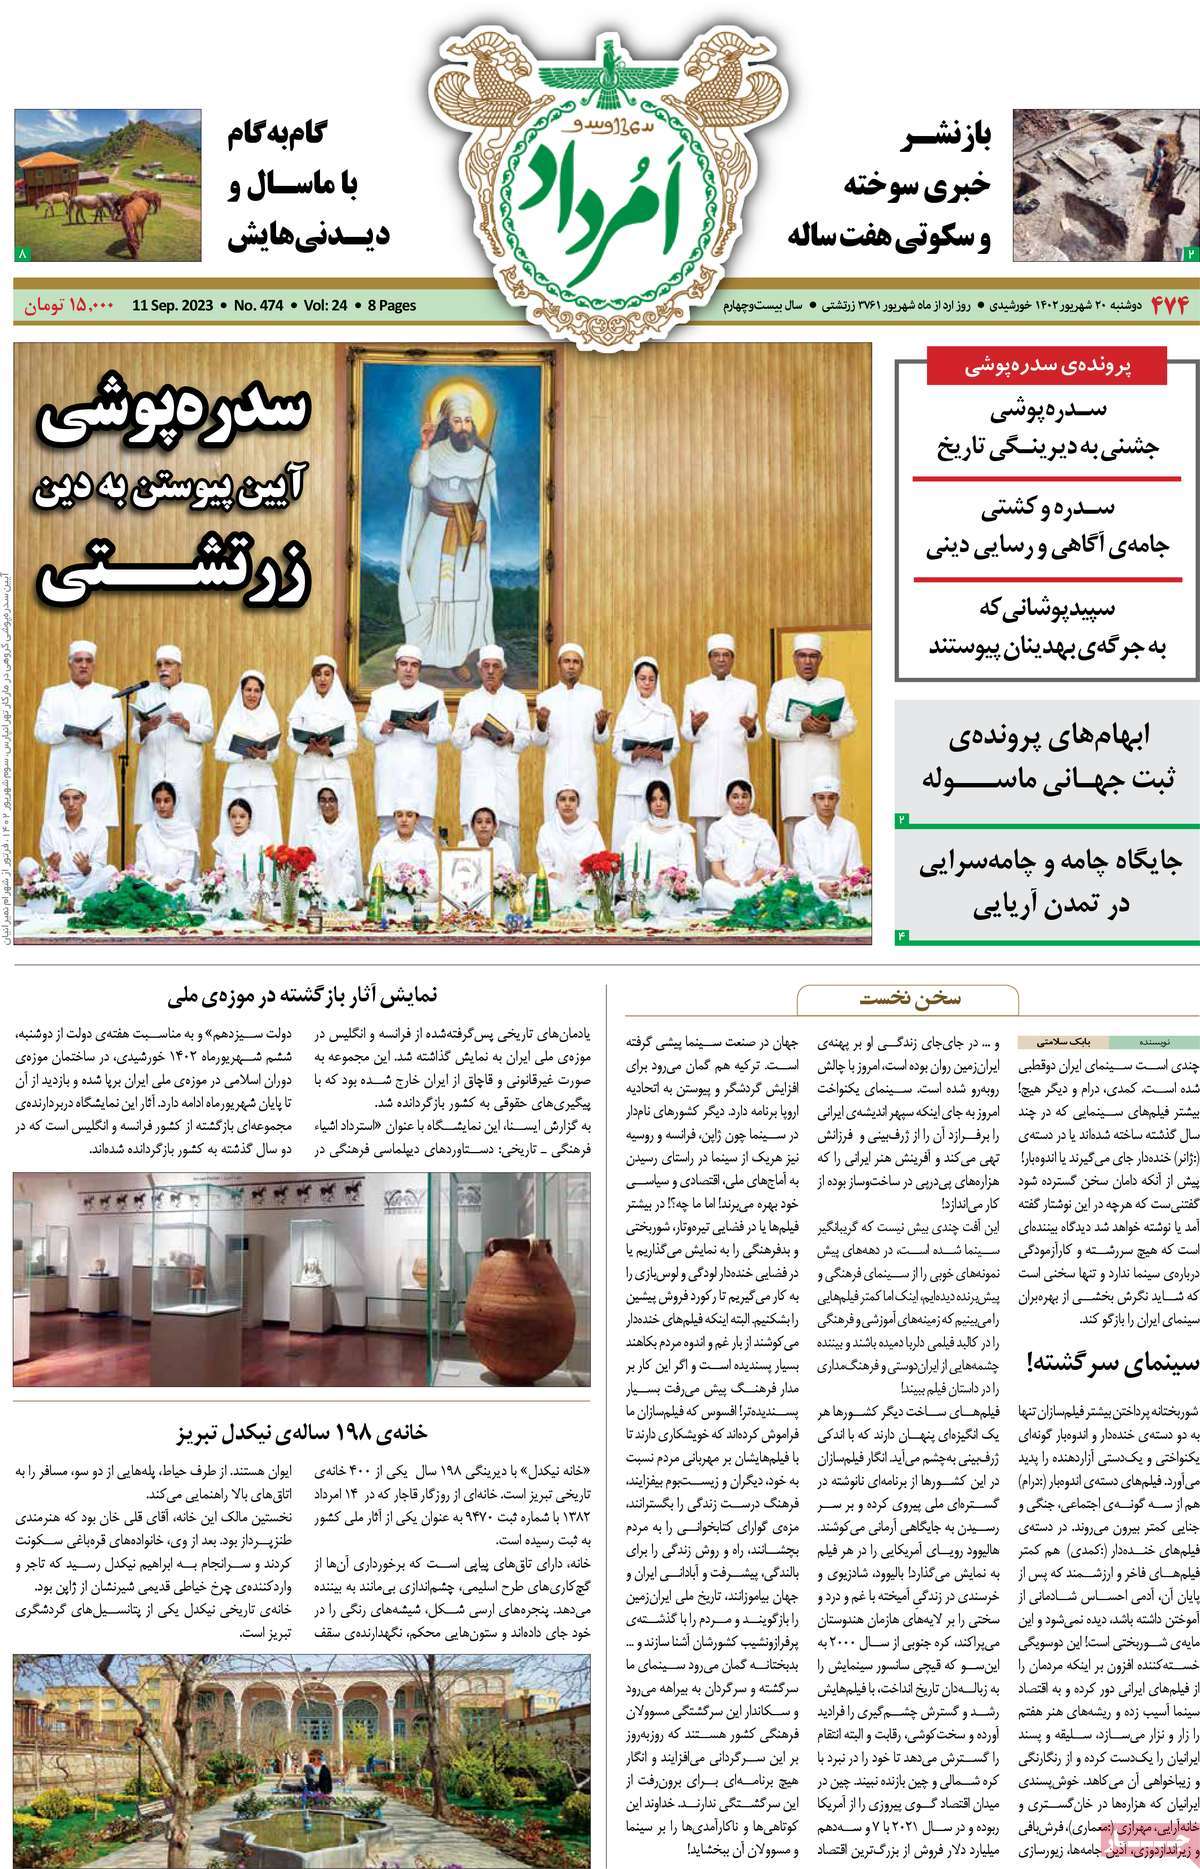 صفحه نخست مجله امرداد - دوشنبه, ۲۰ شهریور ۱۴۰۲